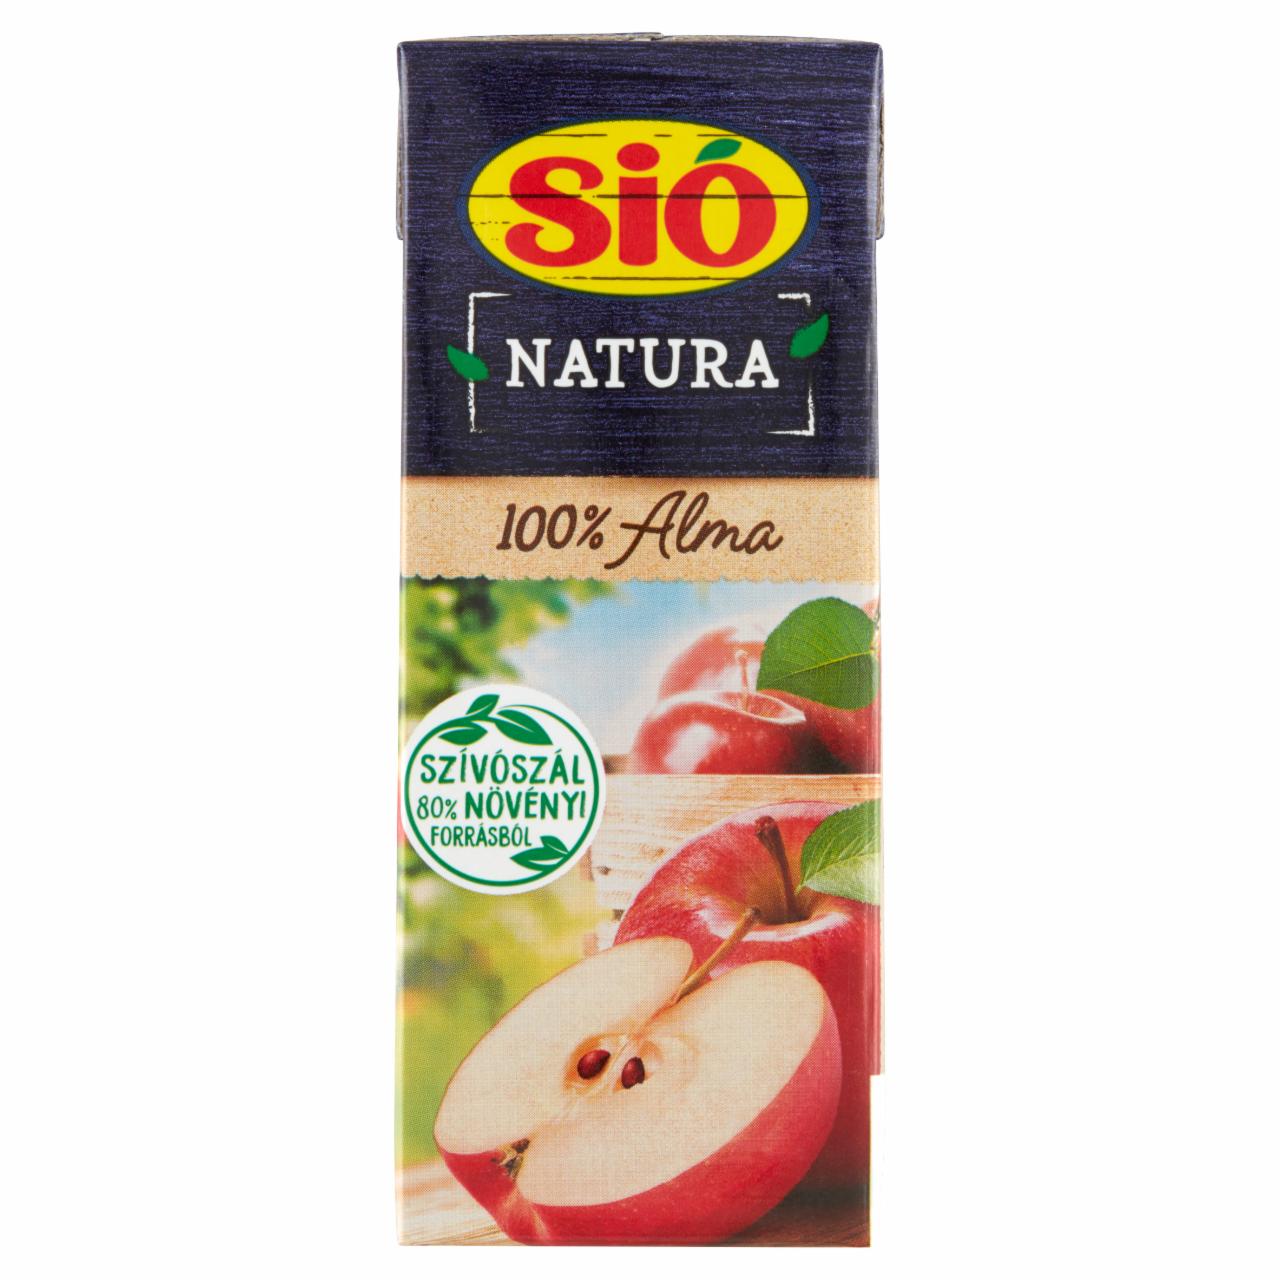 Képek - Sió Natura 100% szűrt almalé 0,2 l